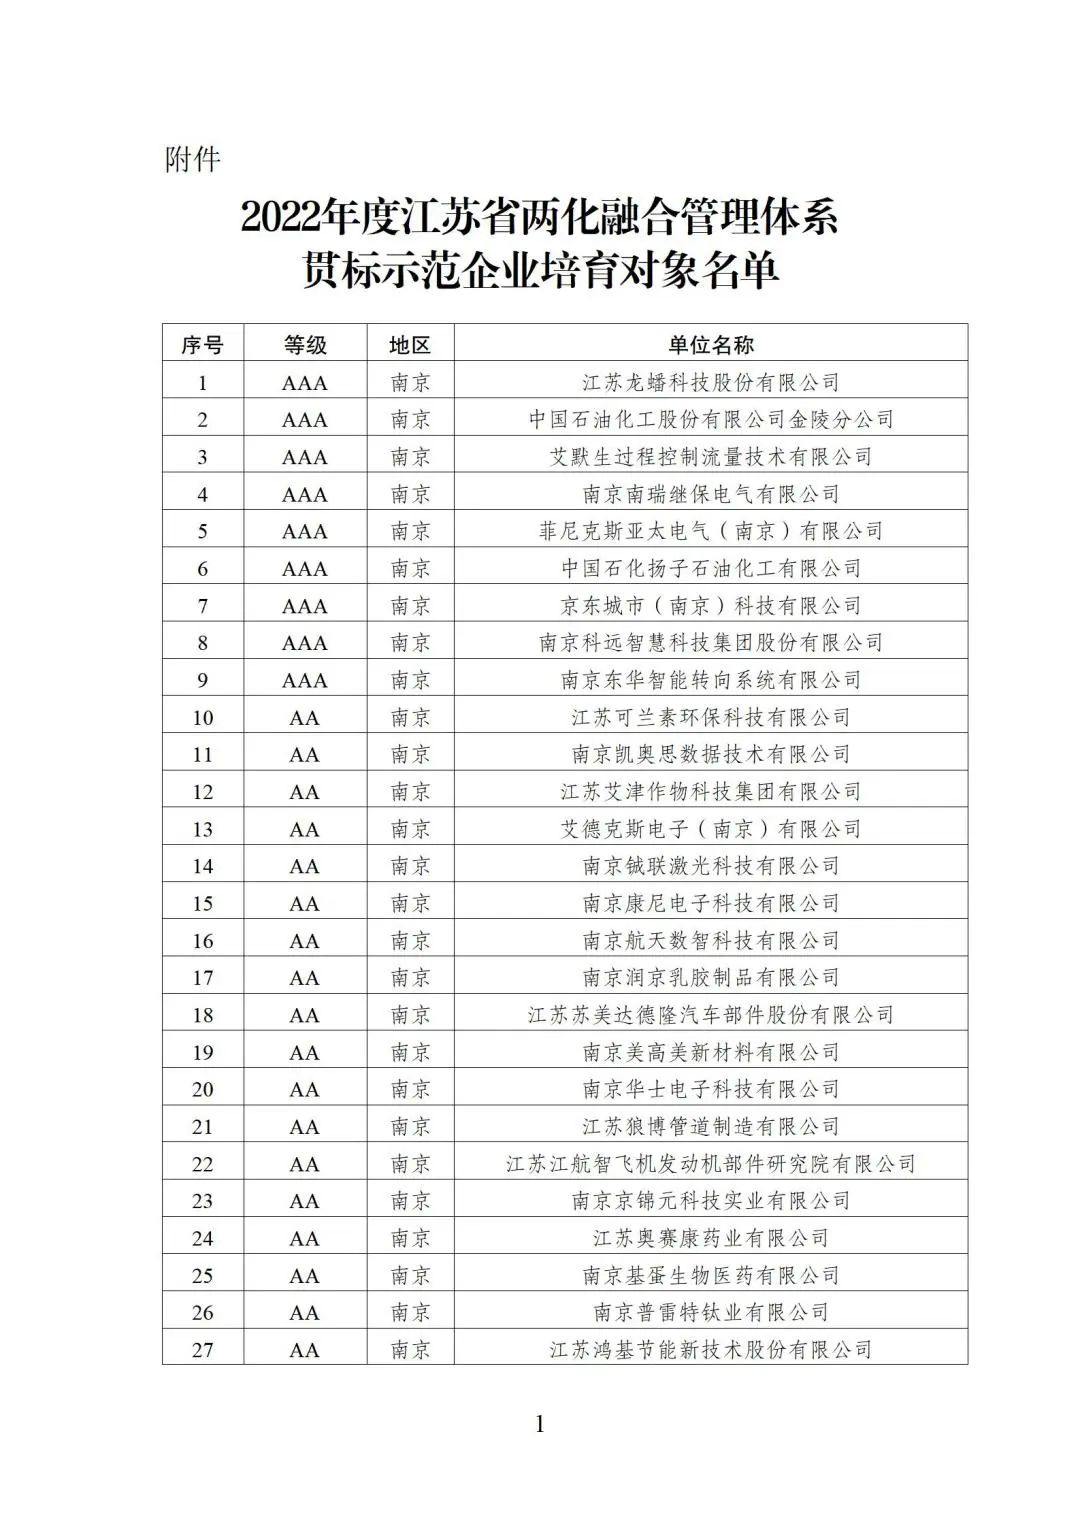 2022年江苏省两化融合管理体系贯标示范企业培育对象名单1.jpg